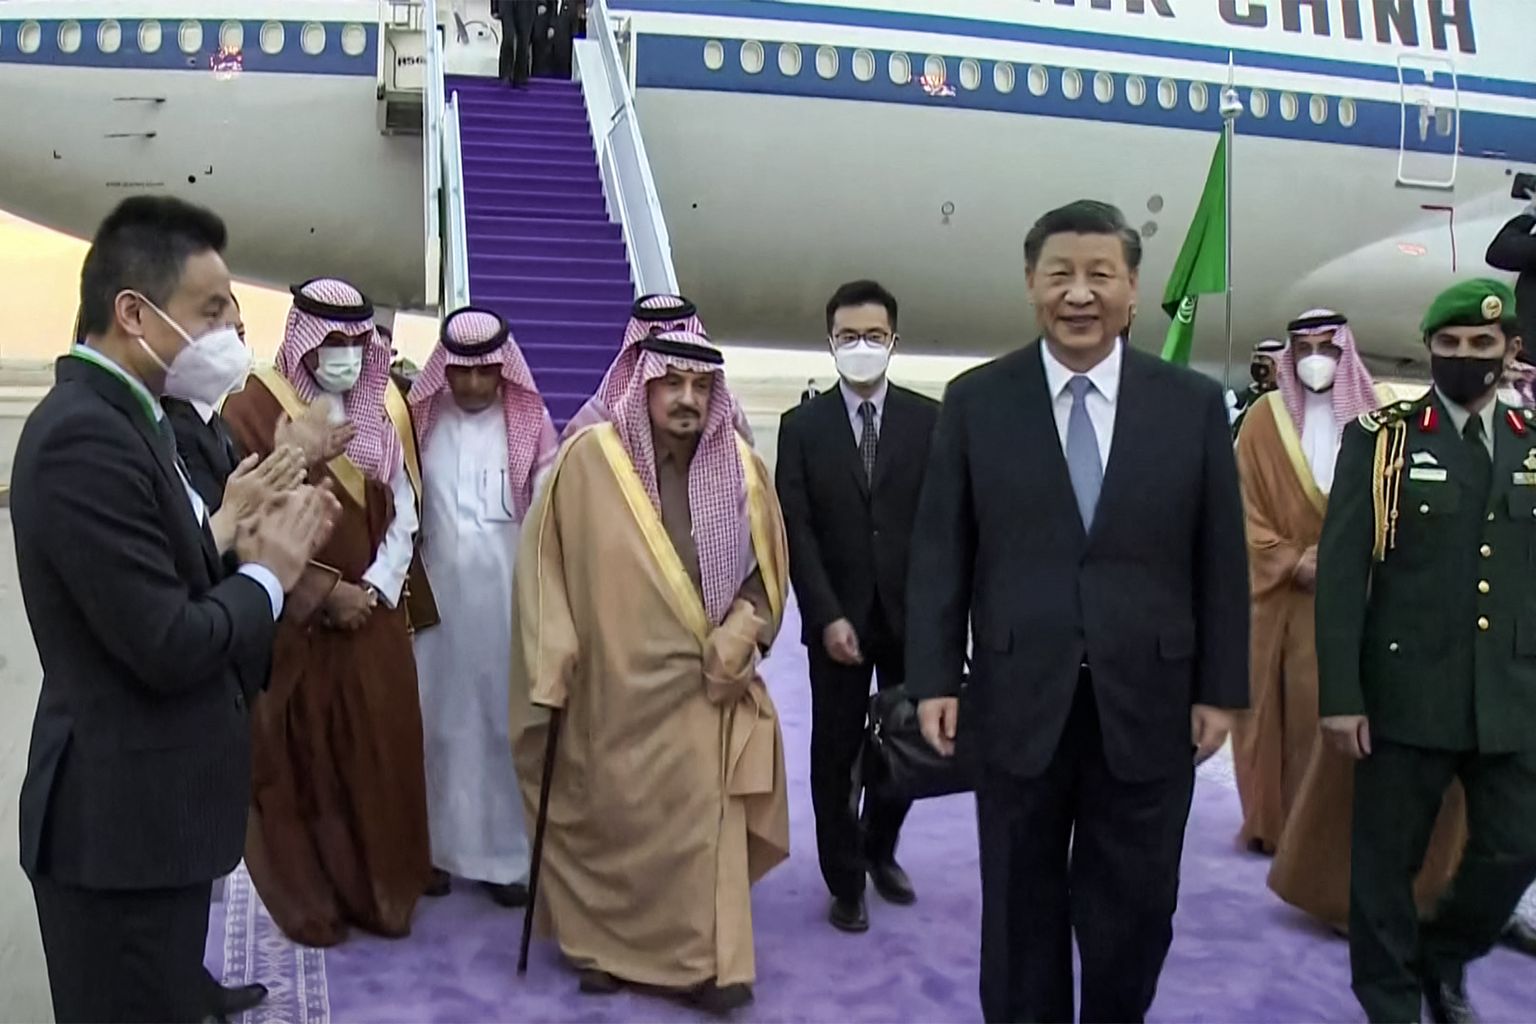 Hiina president Xi Jinpingi vastuvõtmine Saudi Araabia ametnike poolt.